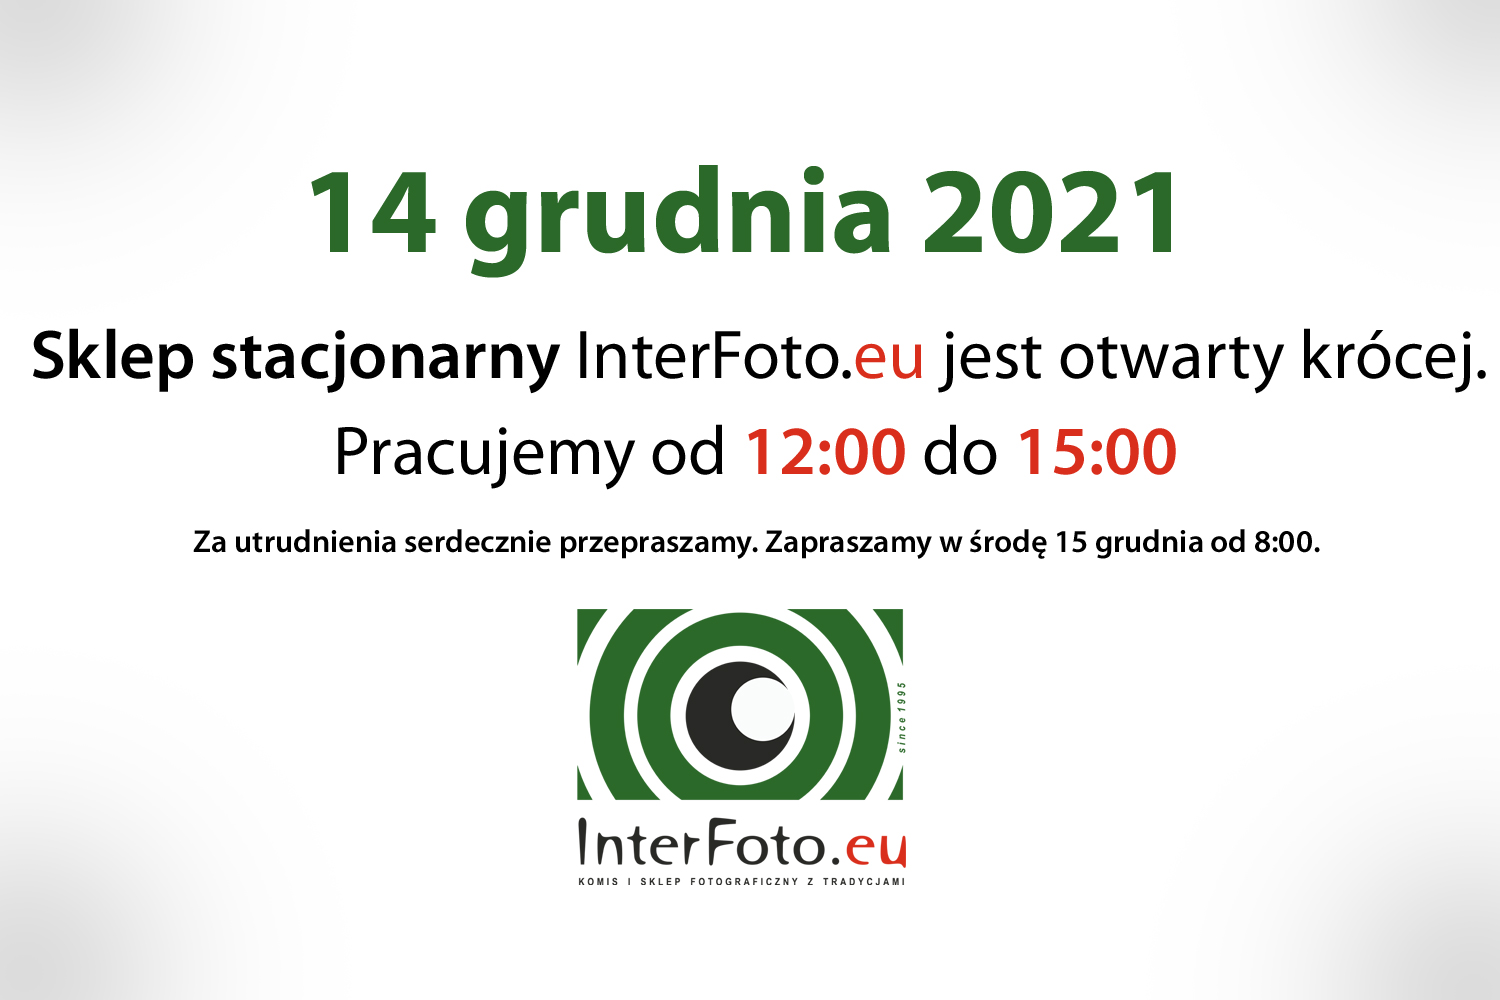 14 grudnia 2021 sklep stacjonarny InterFoto.eu jest otwarty krócej